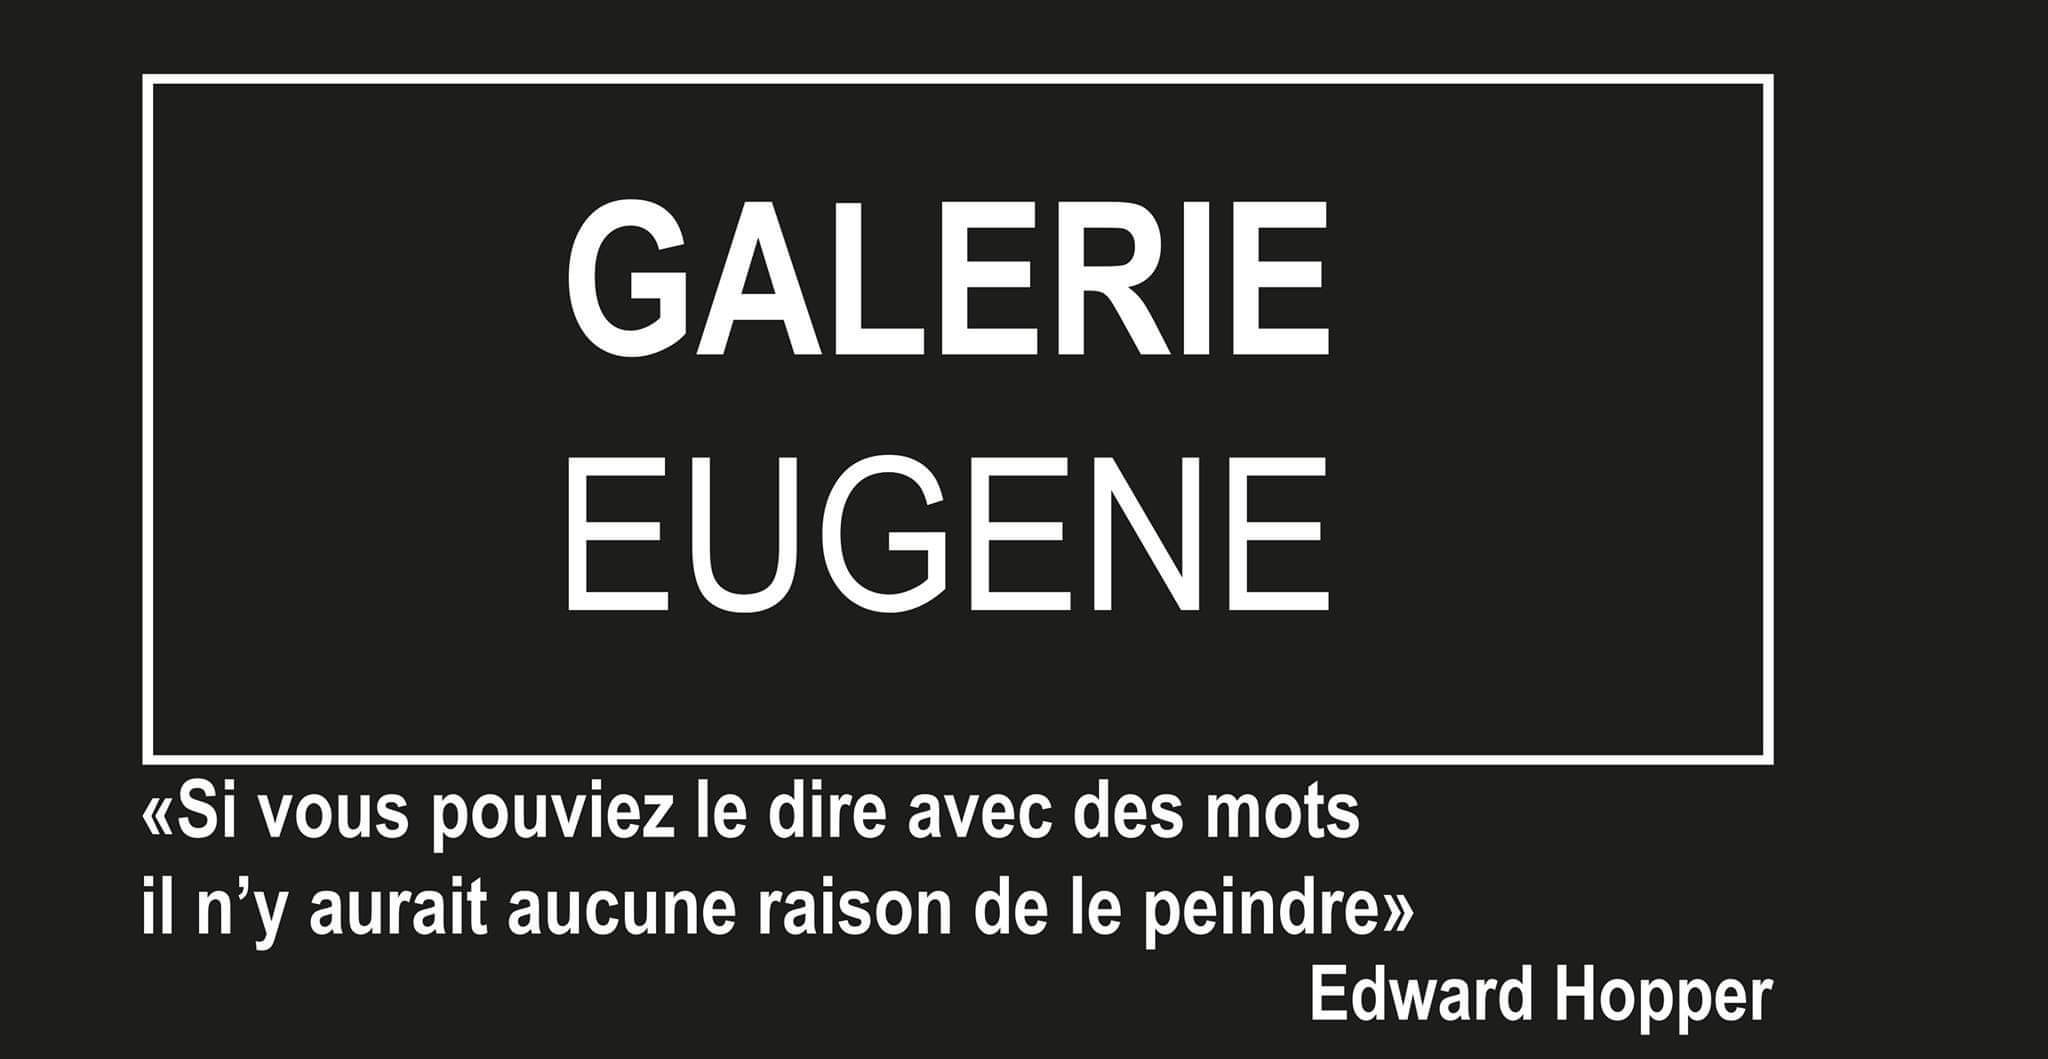 Galerie Eugène